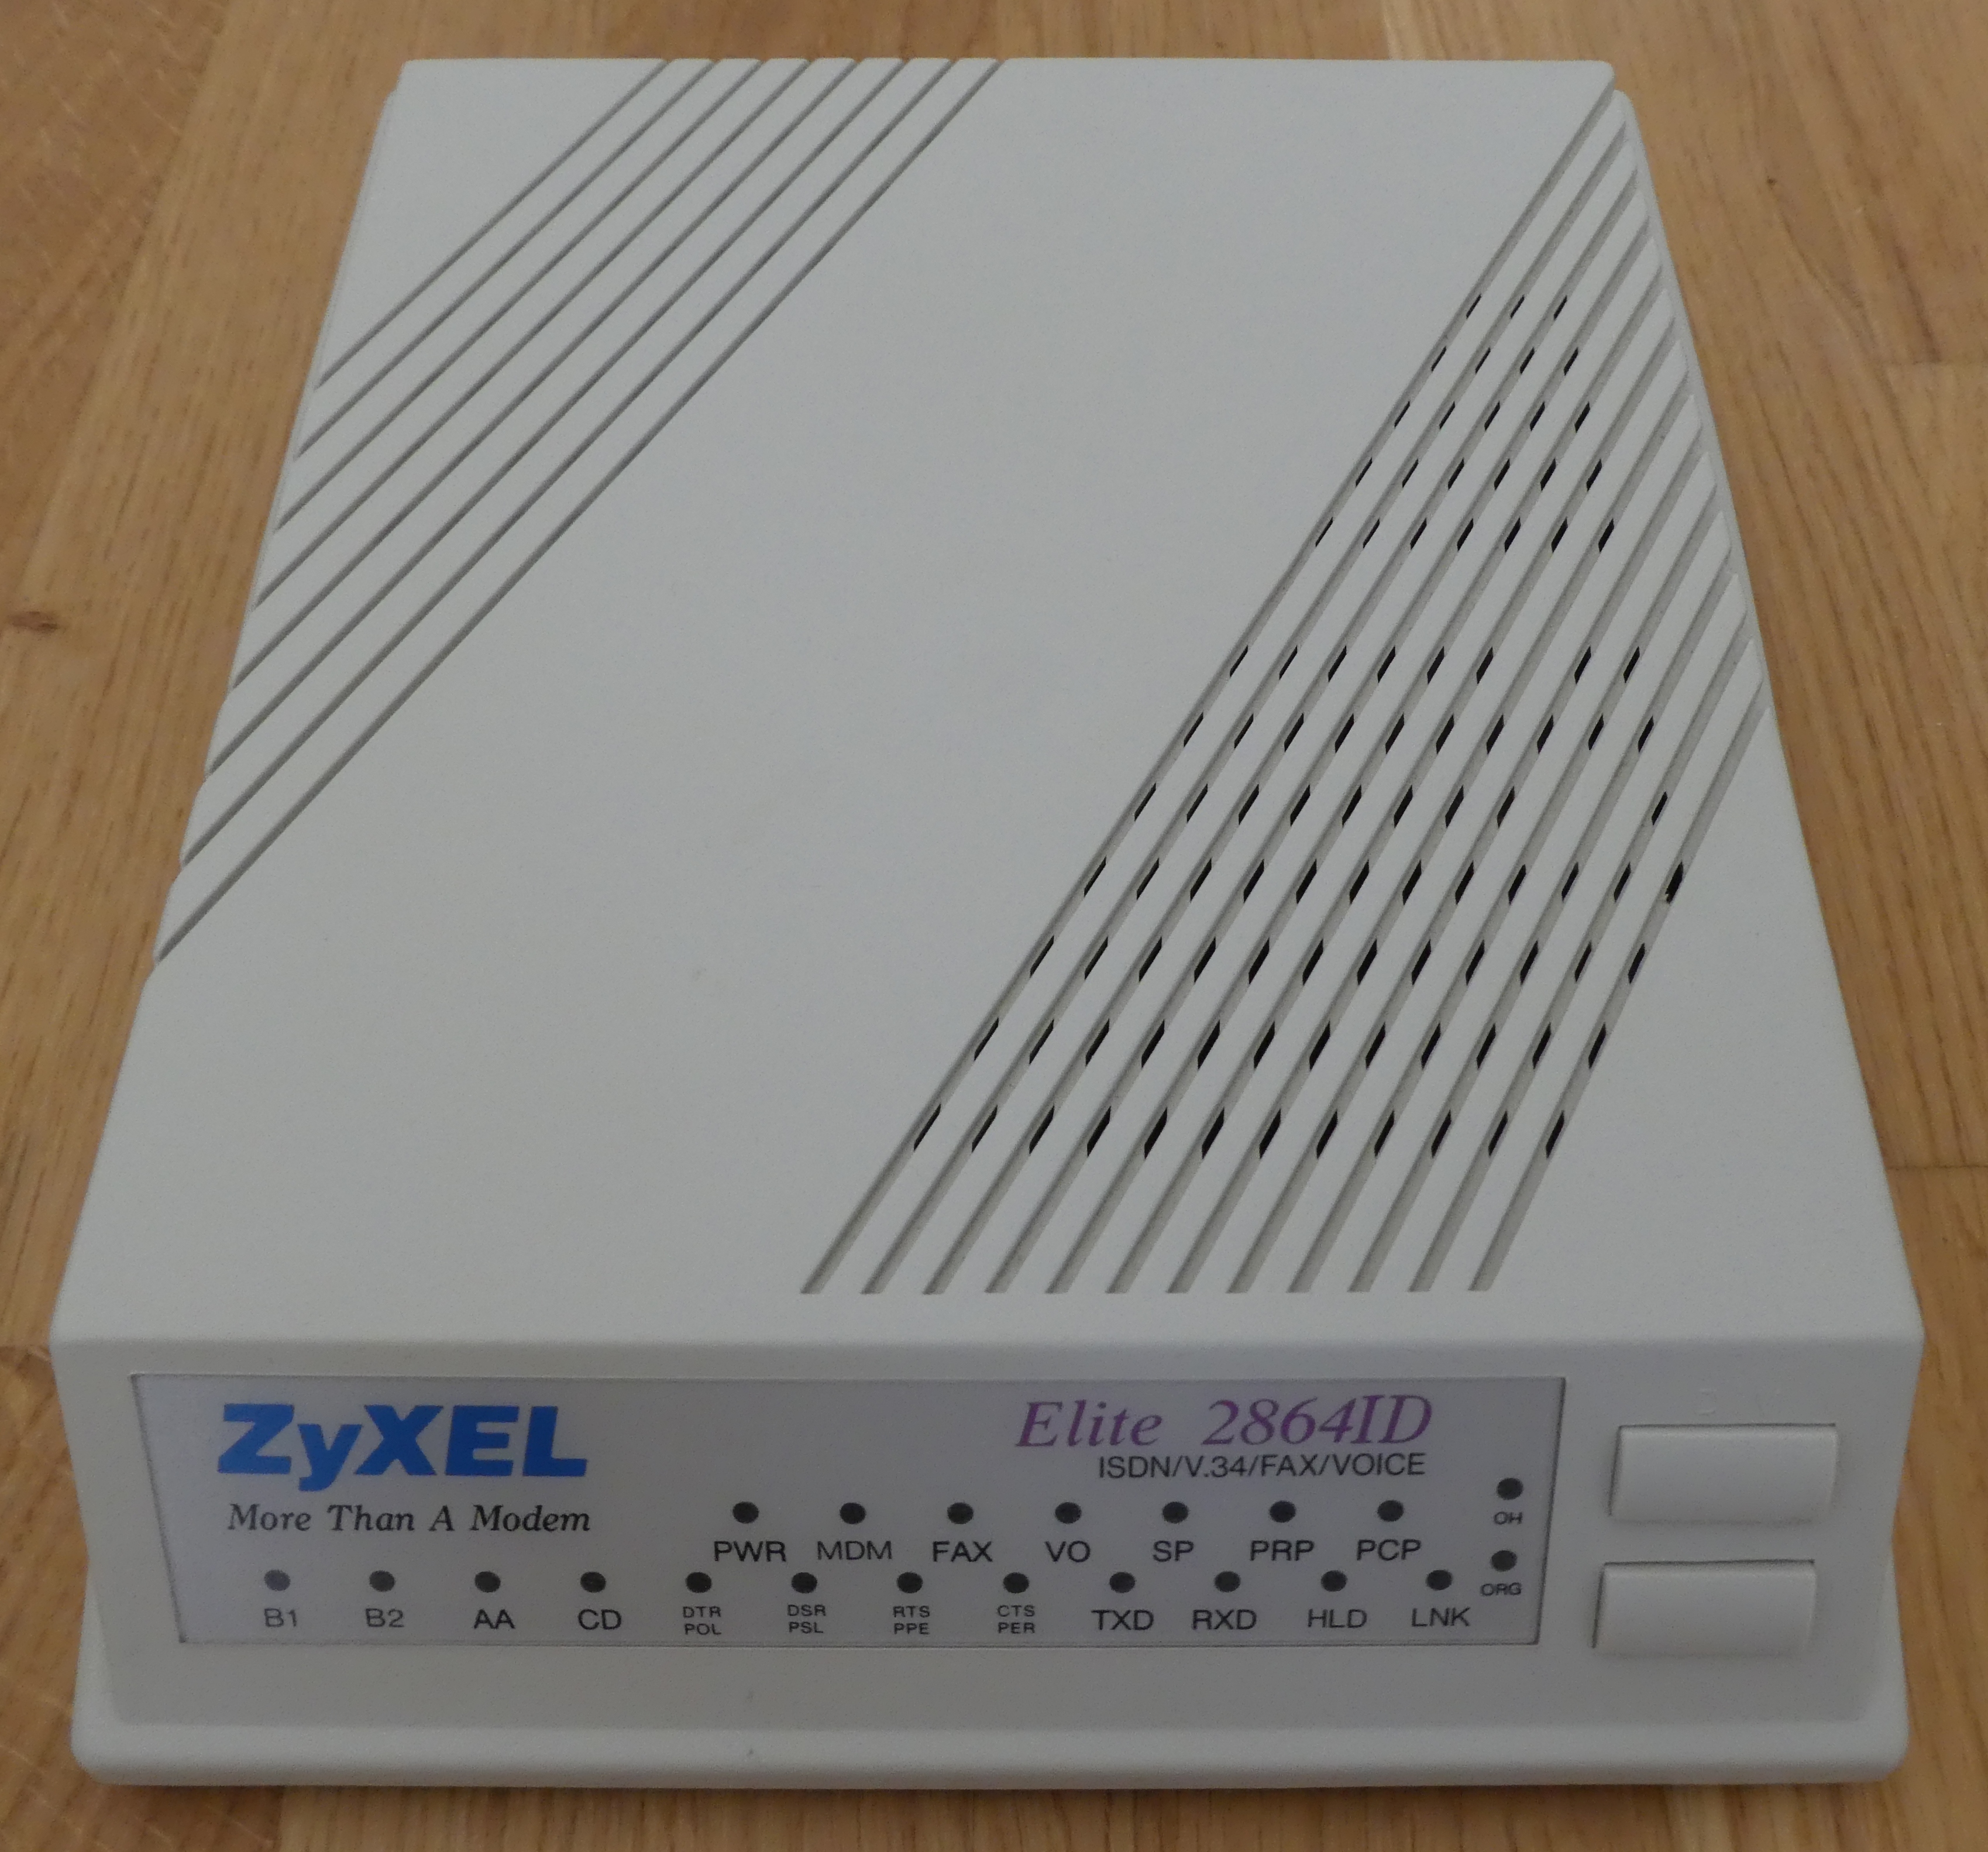 ZyXEL Elite 2864ID - Schräg.jpg